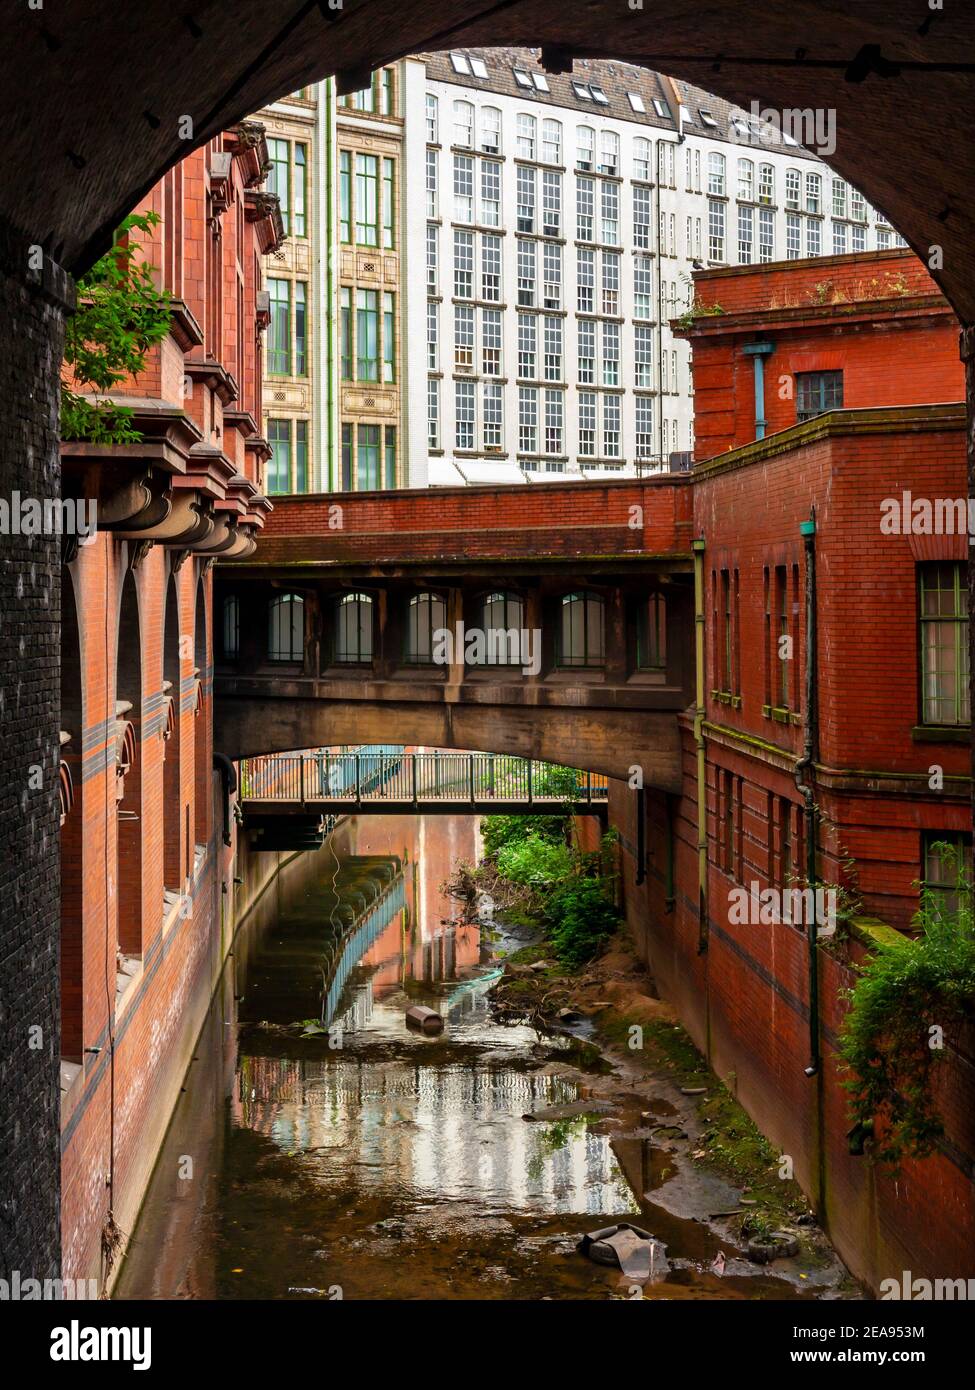 Il fiume Medlock e gli edifici del centro città vicino a Oxford Road A Manchester, Inghilterra, Regno Unito Foto Stock